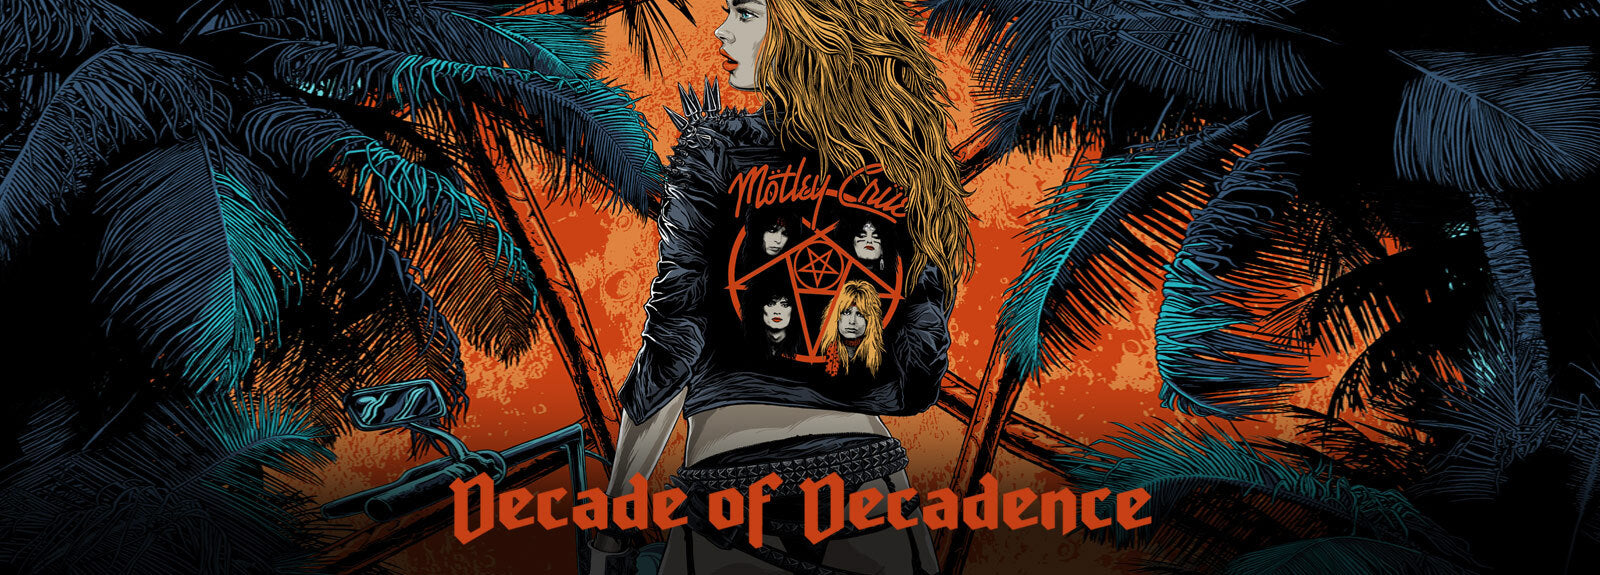 Mötley Crüe Decade of Decadence